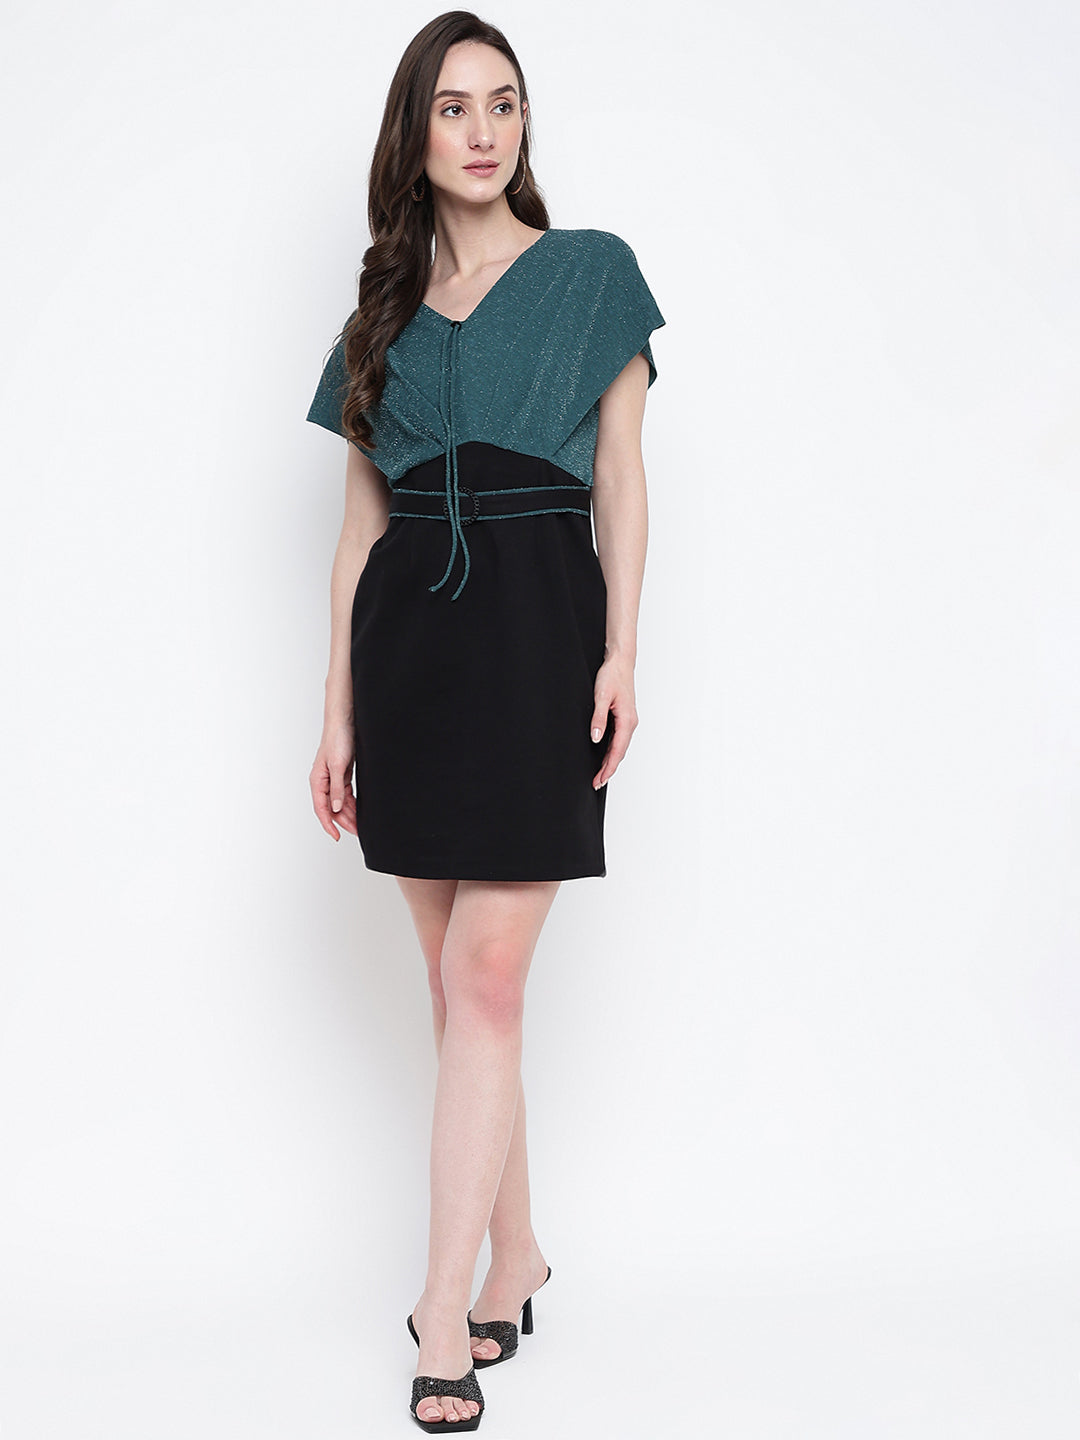 Greenbotle Cap Sleeve Solid 2 Fir 1 Dress